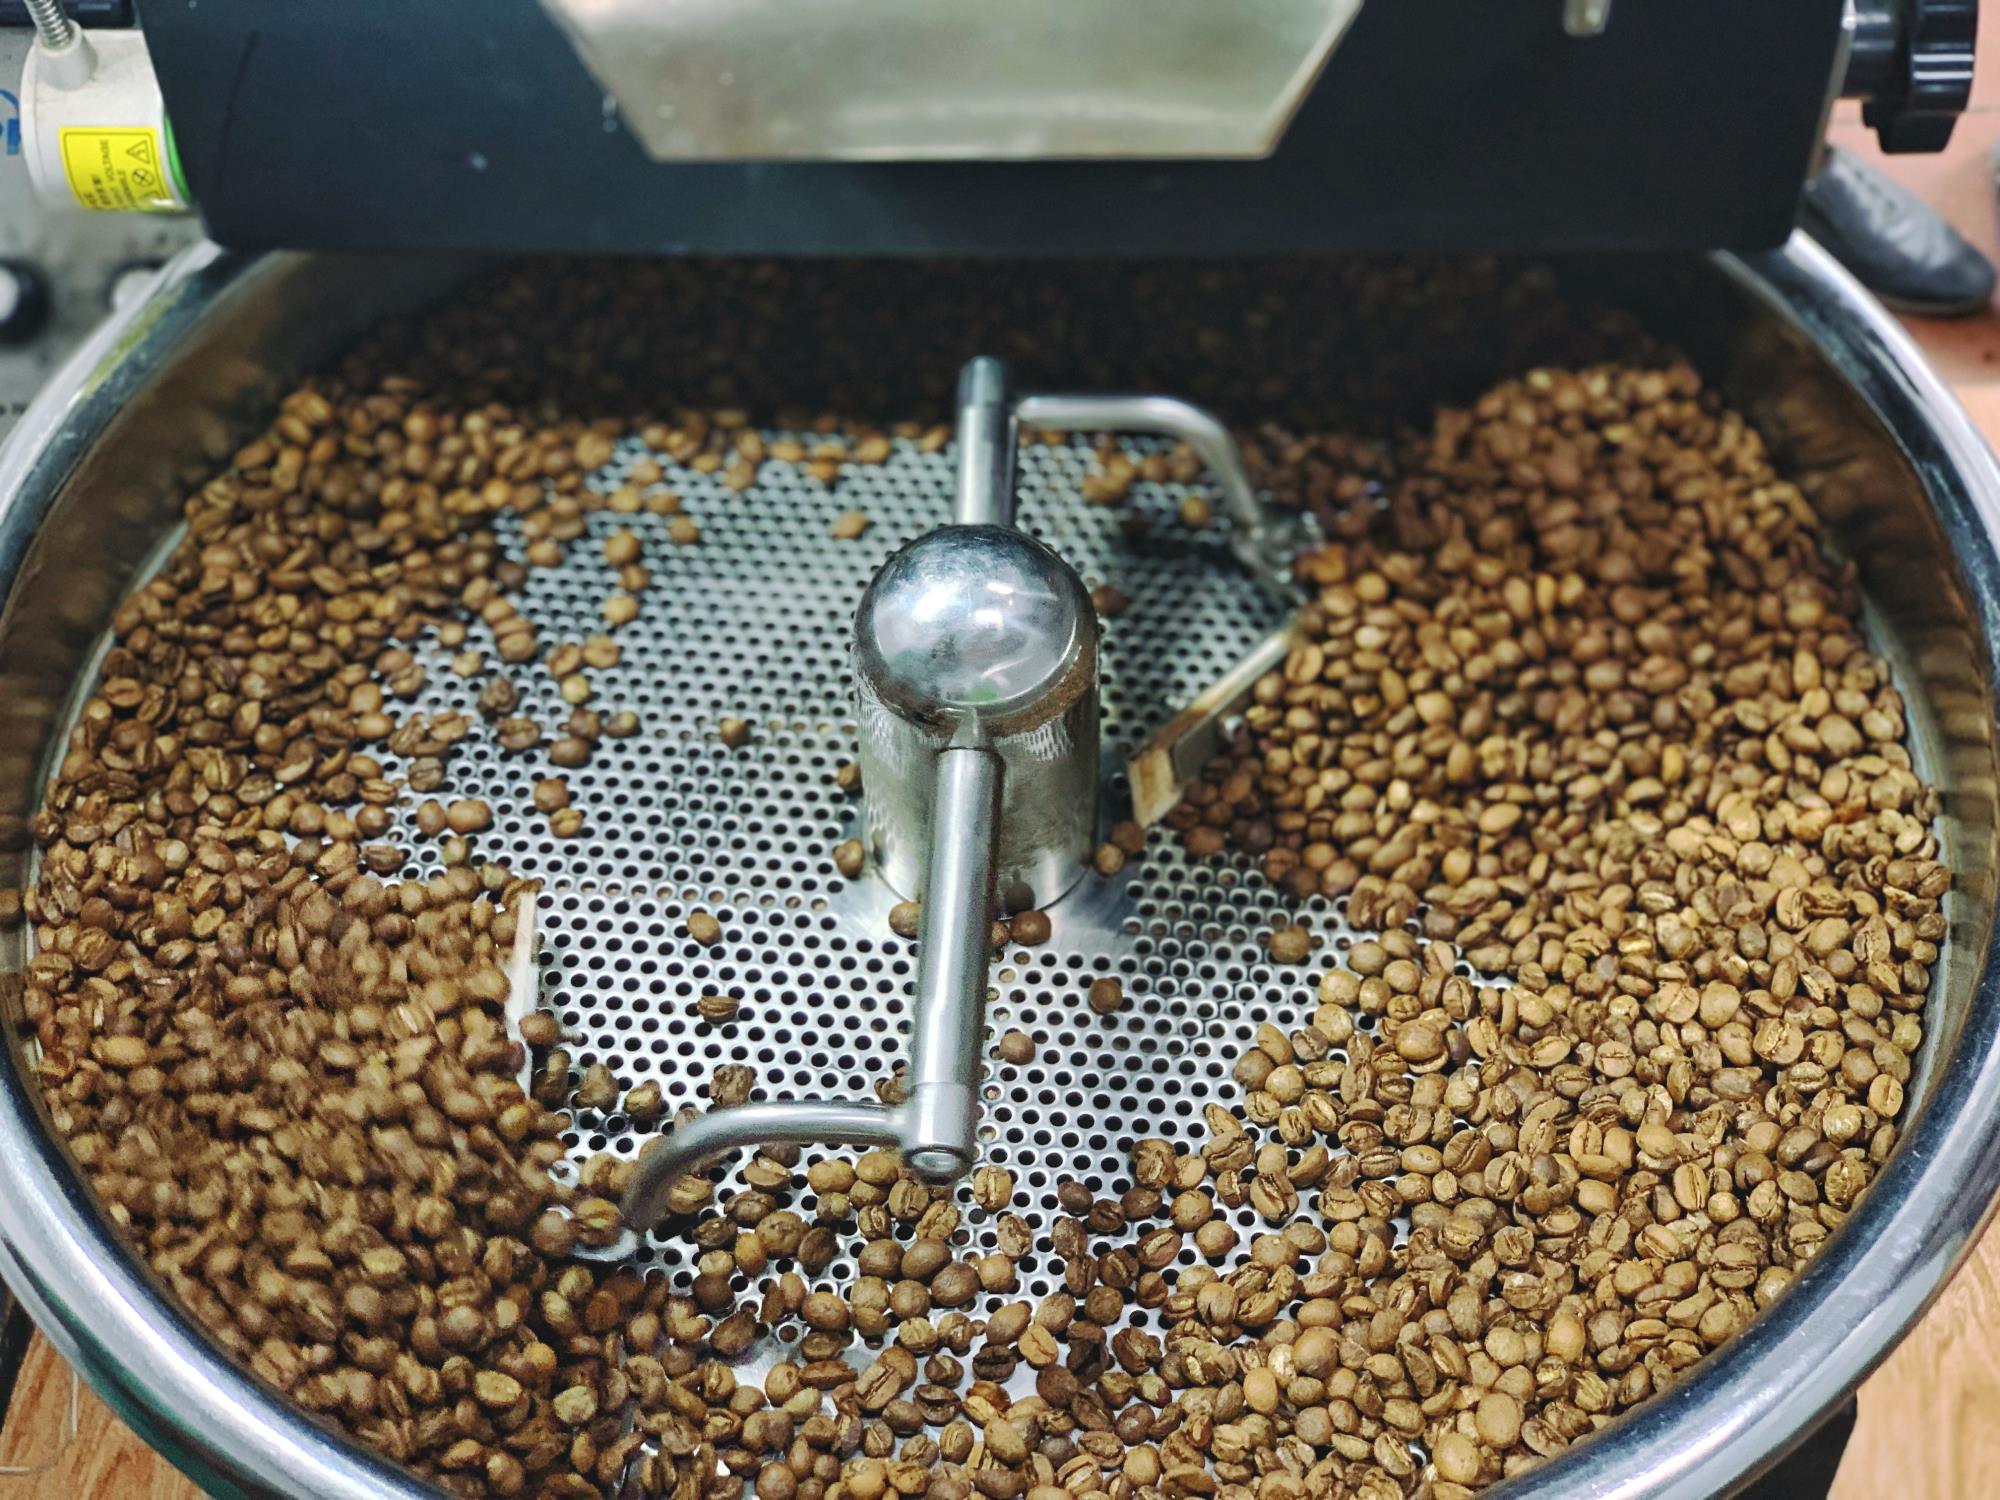 Đặc Sản Huế - Cà phê đặc sản Huế - Arabica A Lưới (chế biến ướt) Greenfields Coffee 250g - Phin - Xay sẵn